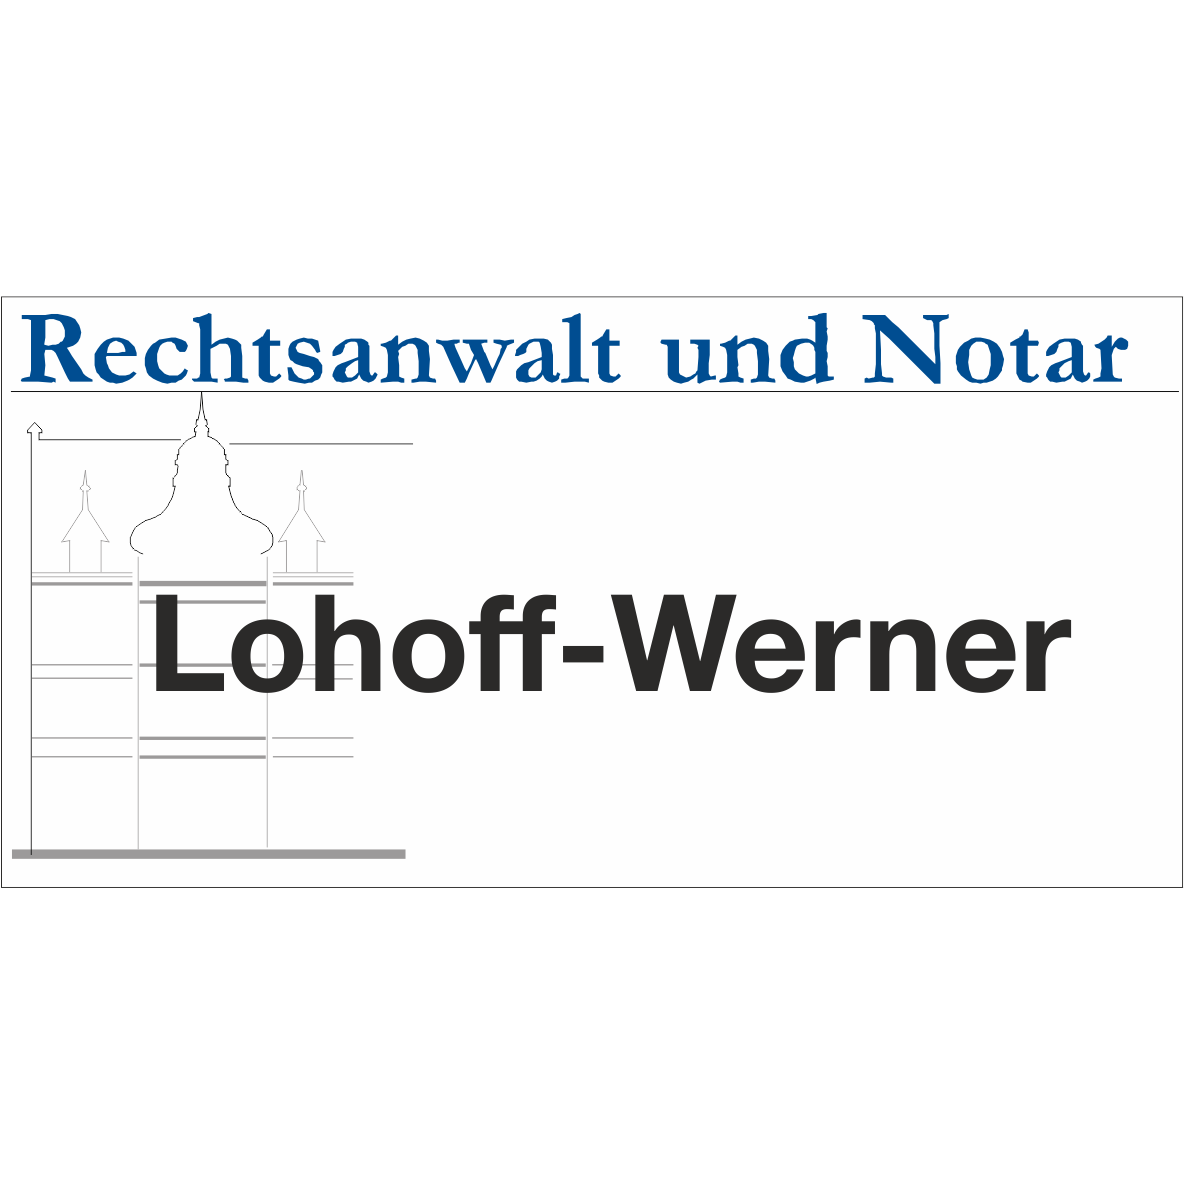 Bernd Lohoff-Werner  